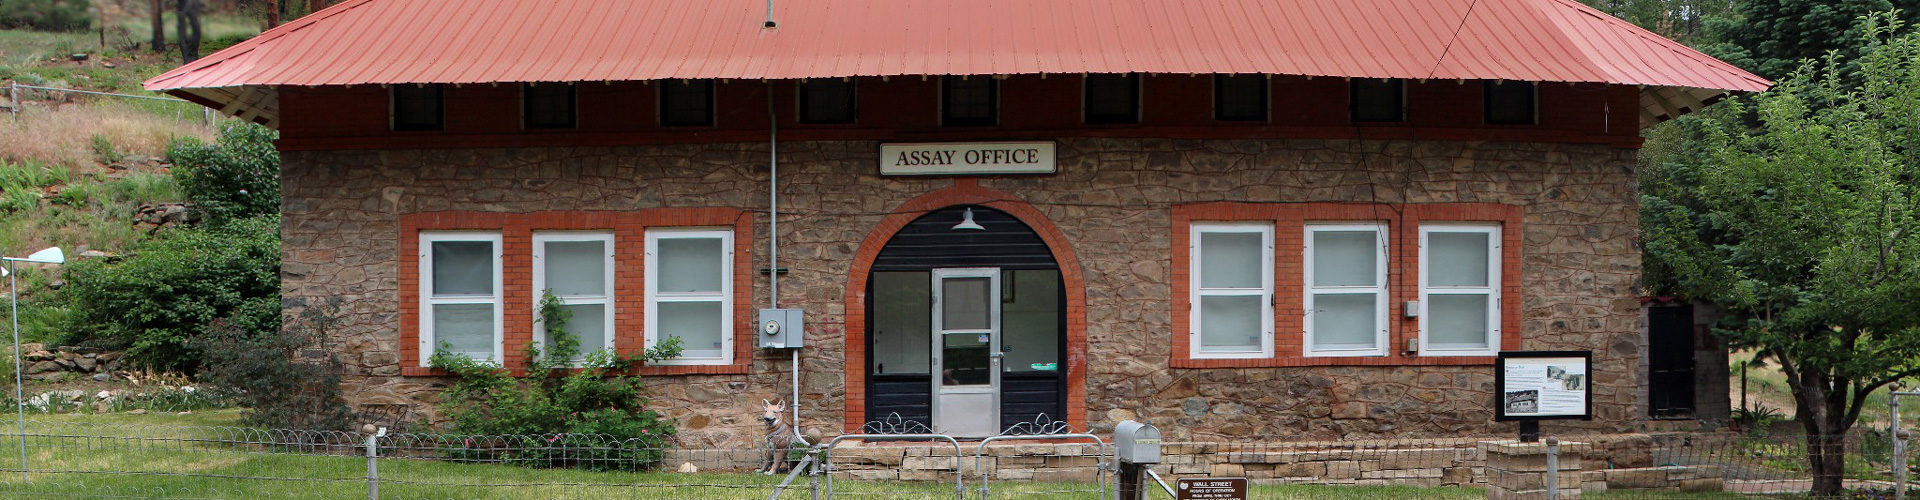 Assay office museum